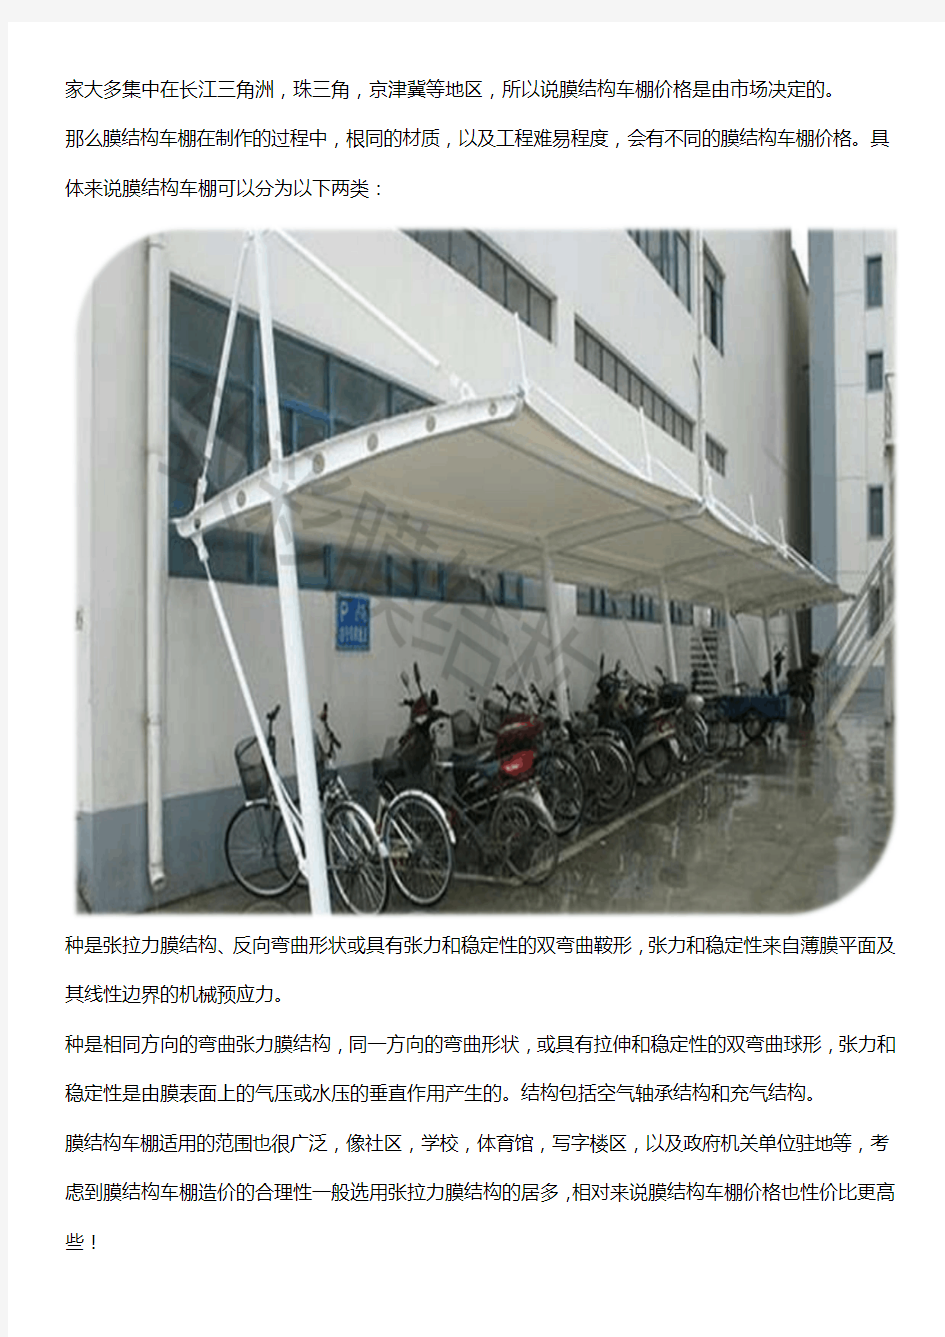 公共膜结构自行车棚设计费用是多少钱_公共膜结构自行车棚主要材料